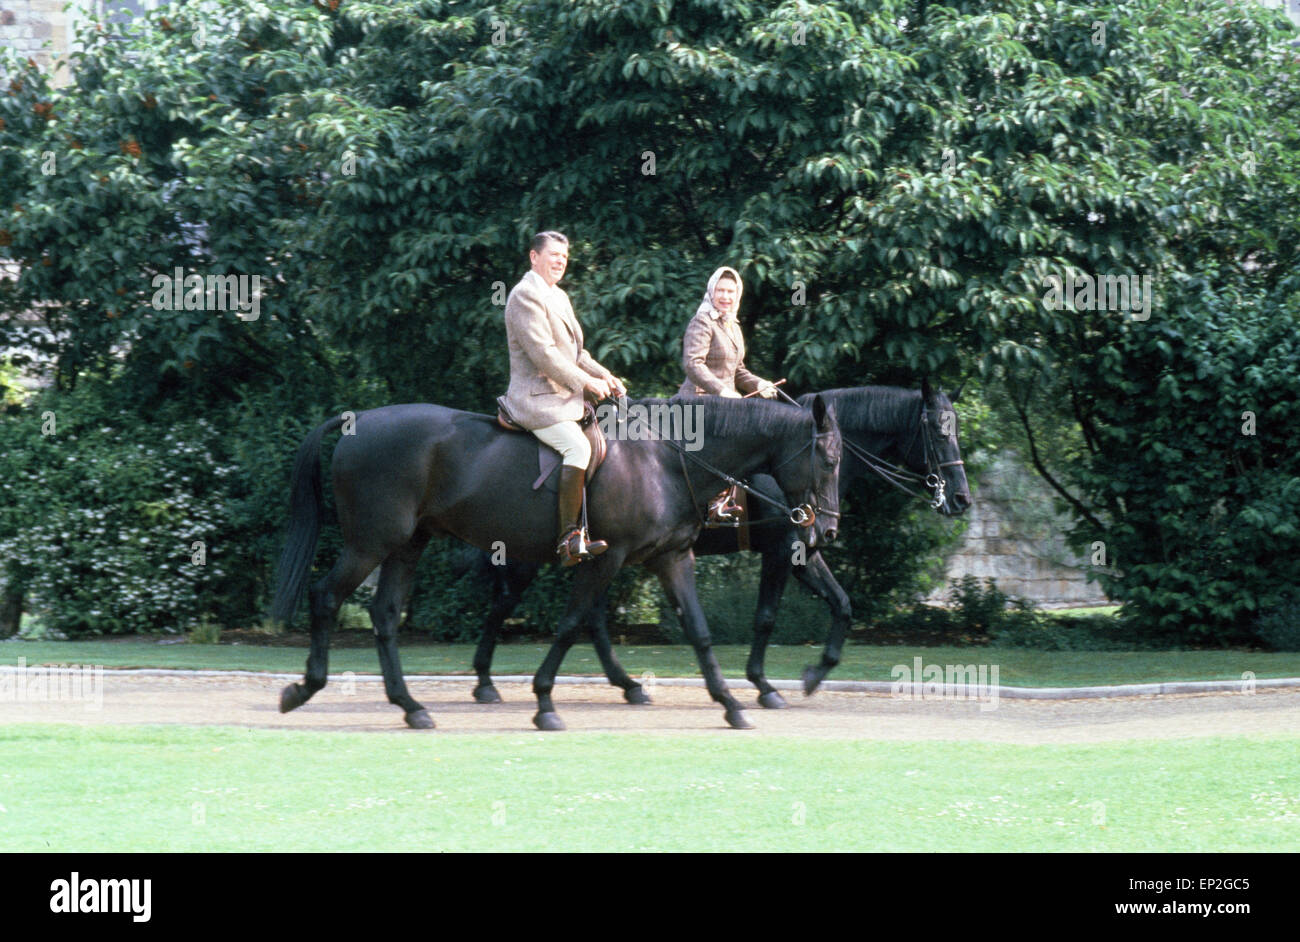 Le président américain Ronald Reagan à califourchon sur le cheval équitation du centenaire avec la reine Elizabeth II le matin birman durant leur trajet dans Windsor Great Park pendant la visite du président à la Grande-Bretagne. 8 juin 1982. Banque D'Images